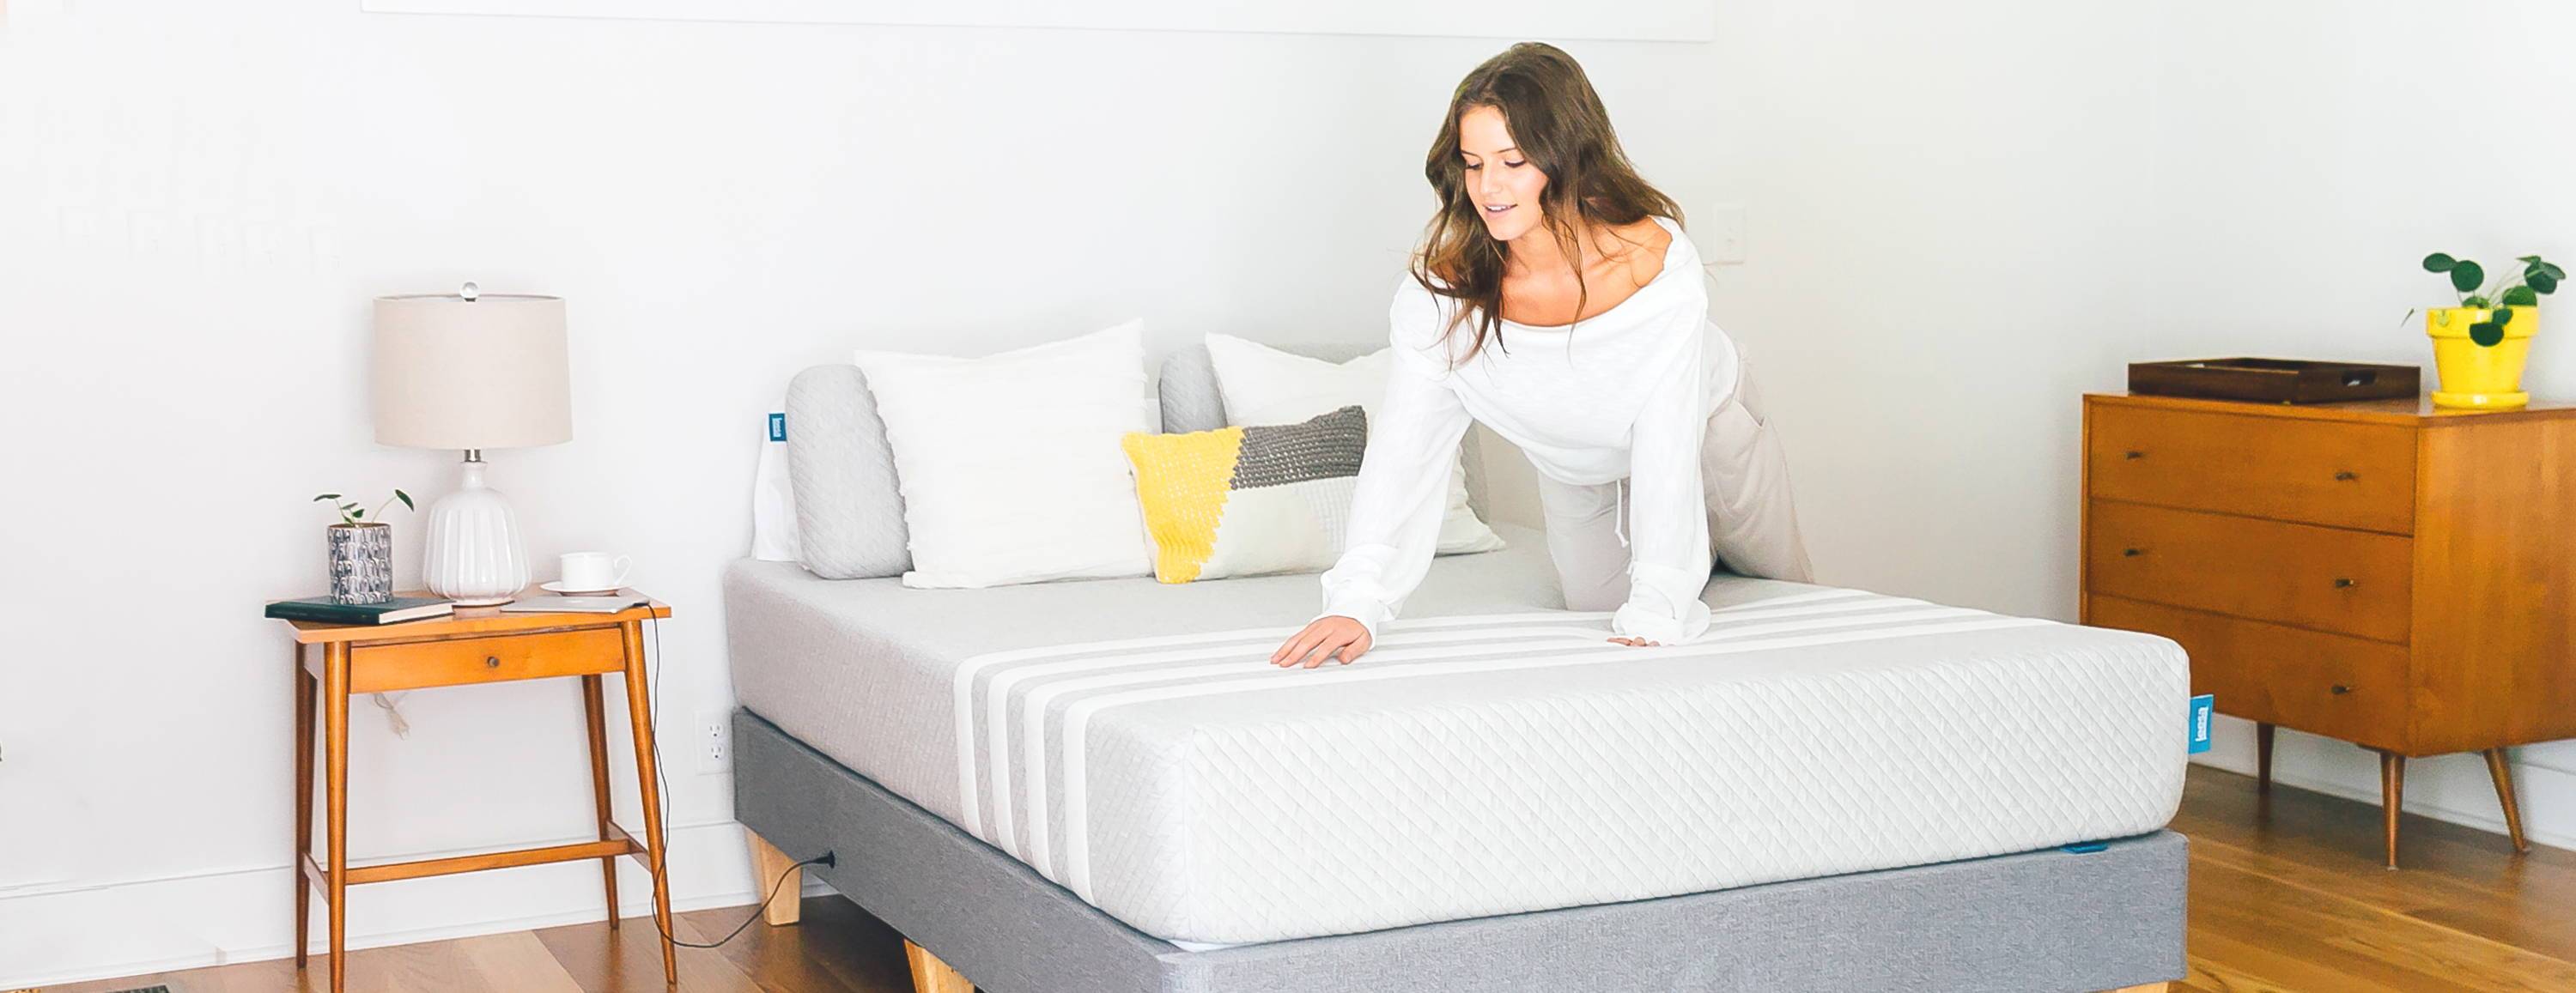 57+ Should you flip a memory foam mattress ideas in 2021 